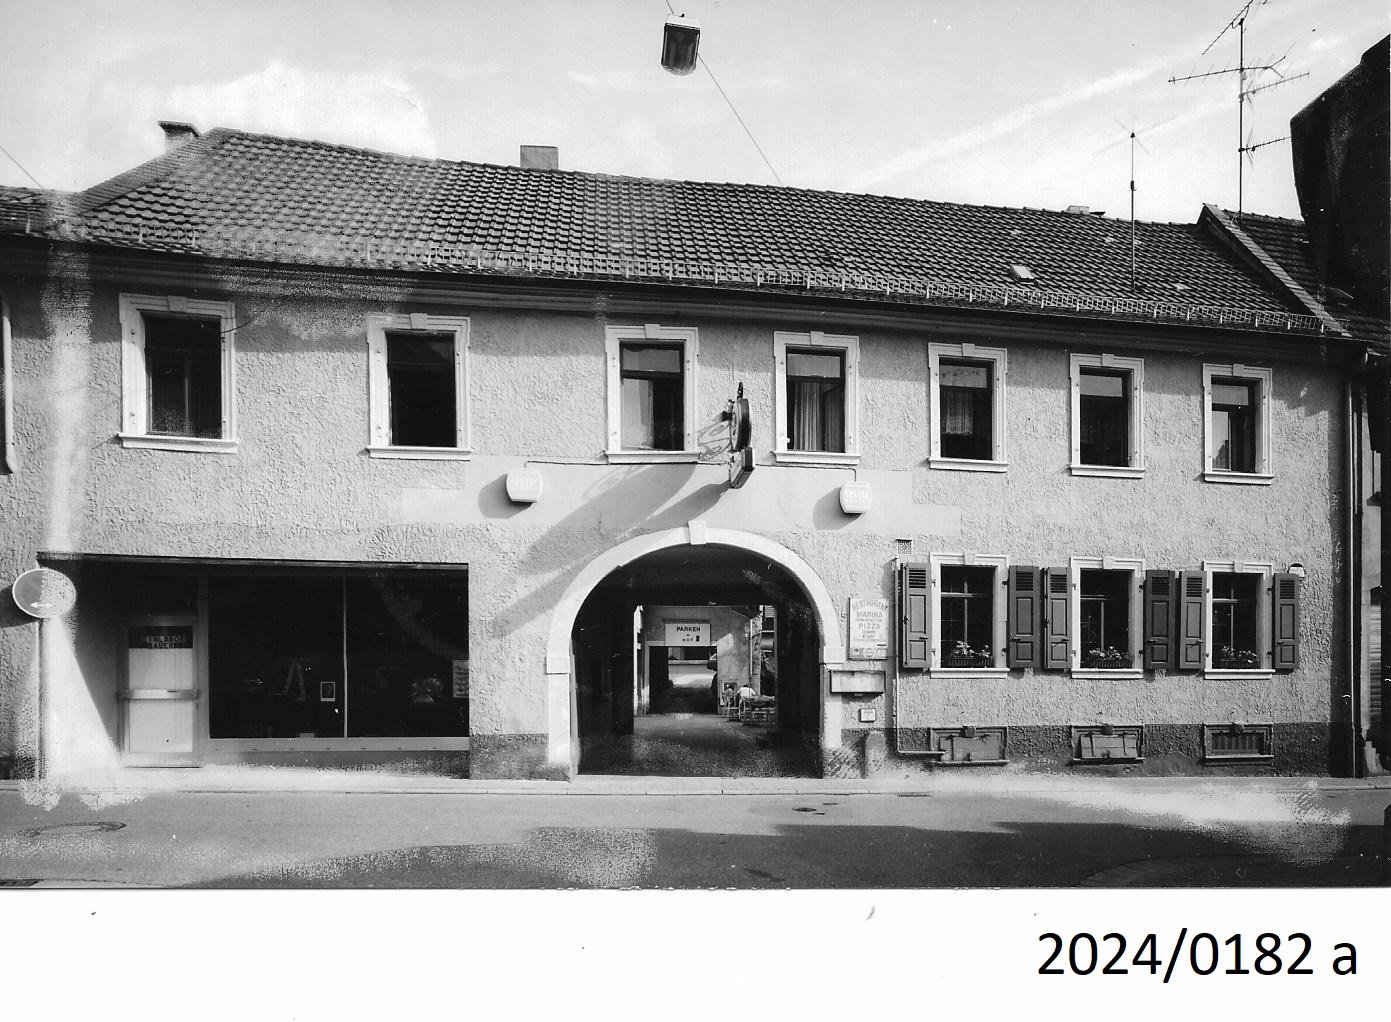 Bad Dürkheim, Winzerhof Kaiserslauterer Straße 5, 1991 (Stadtmuseum Bad Dürkheim im Kulturzentrum Haus Catoir CC BY-NC-SA)